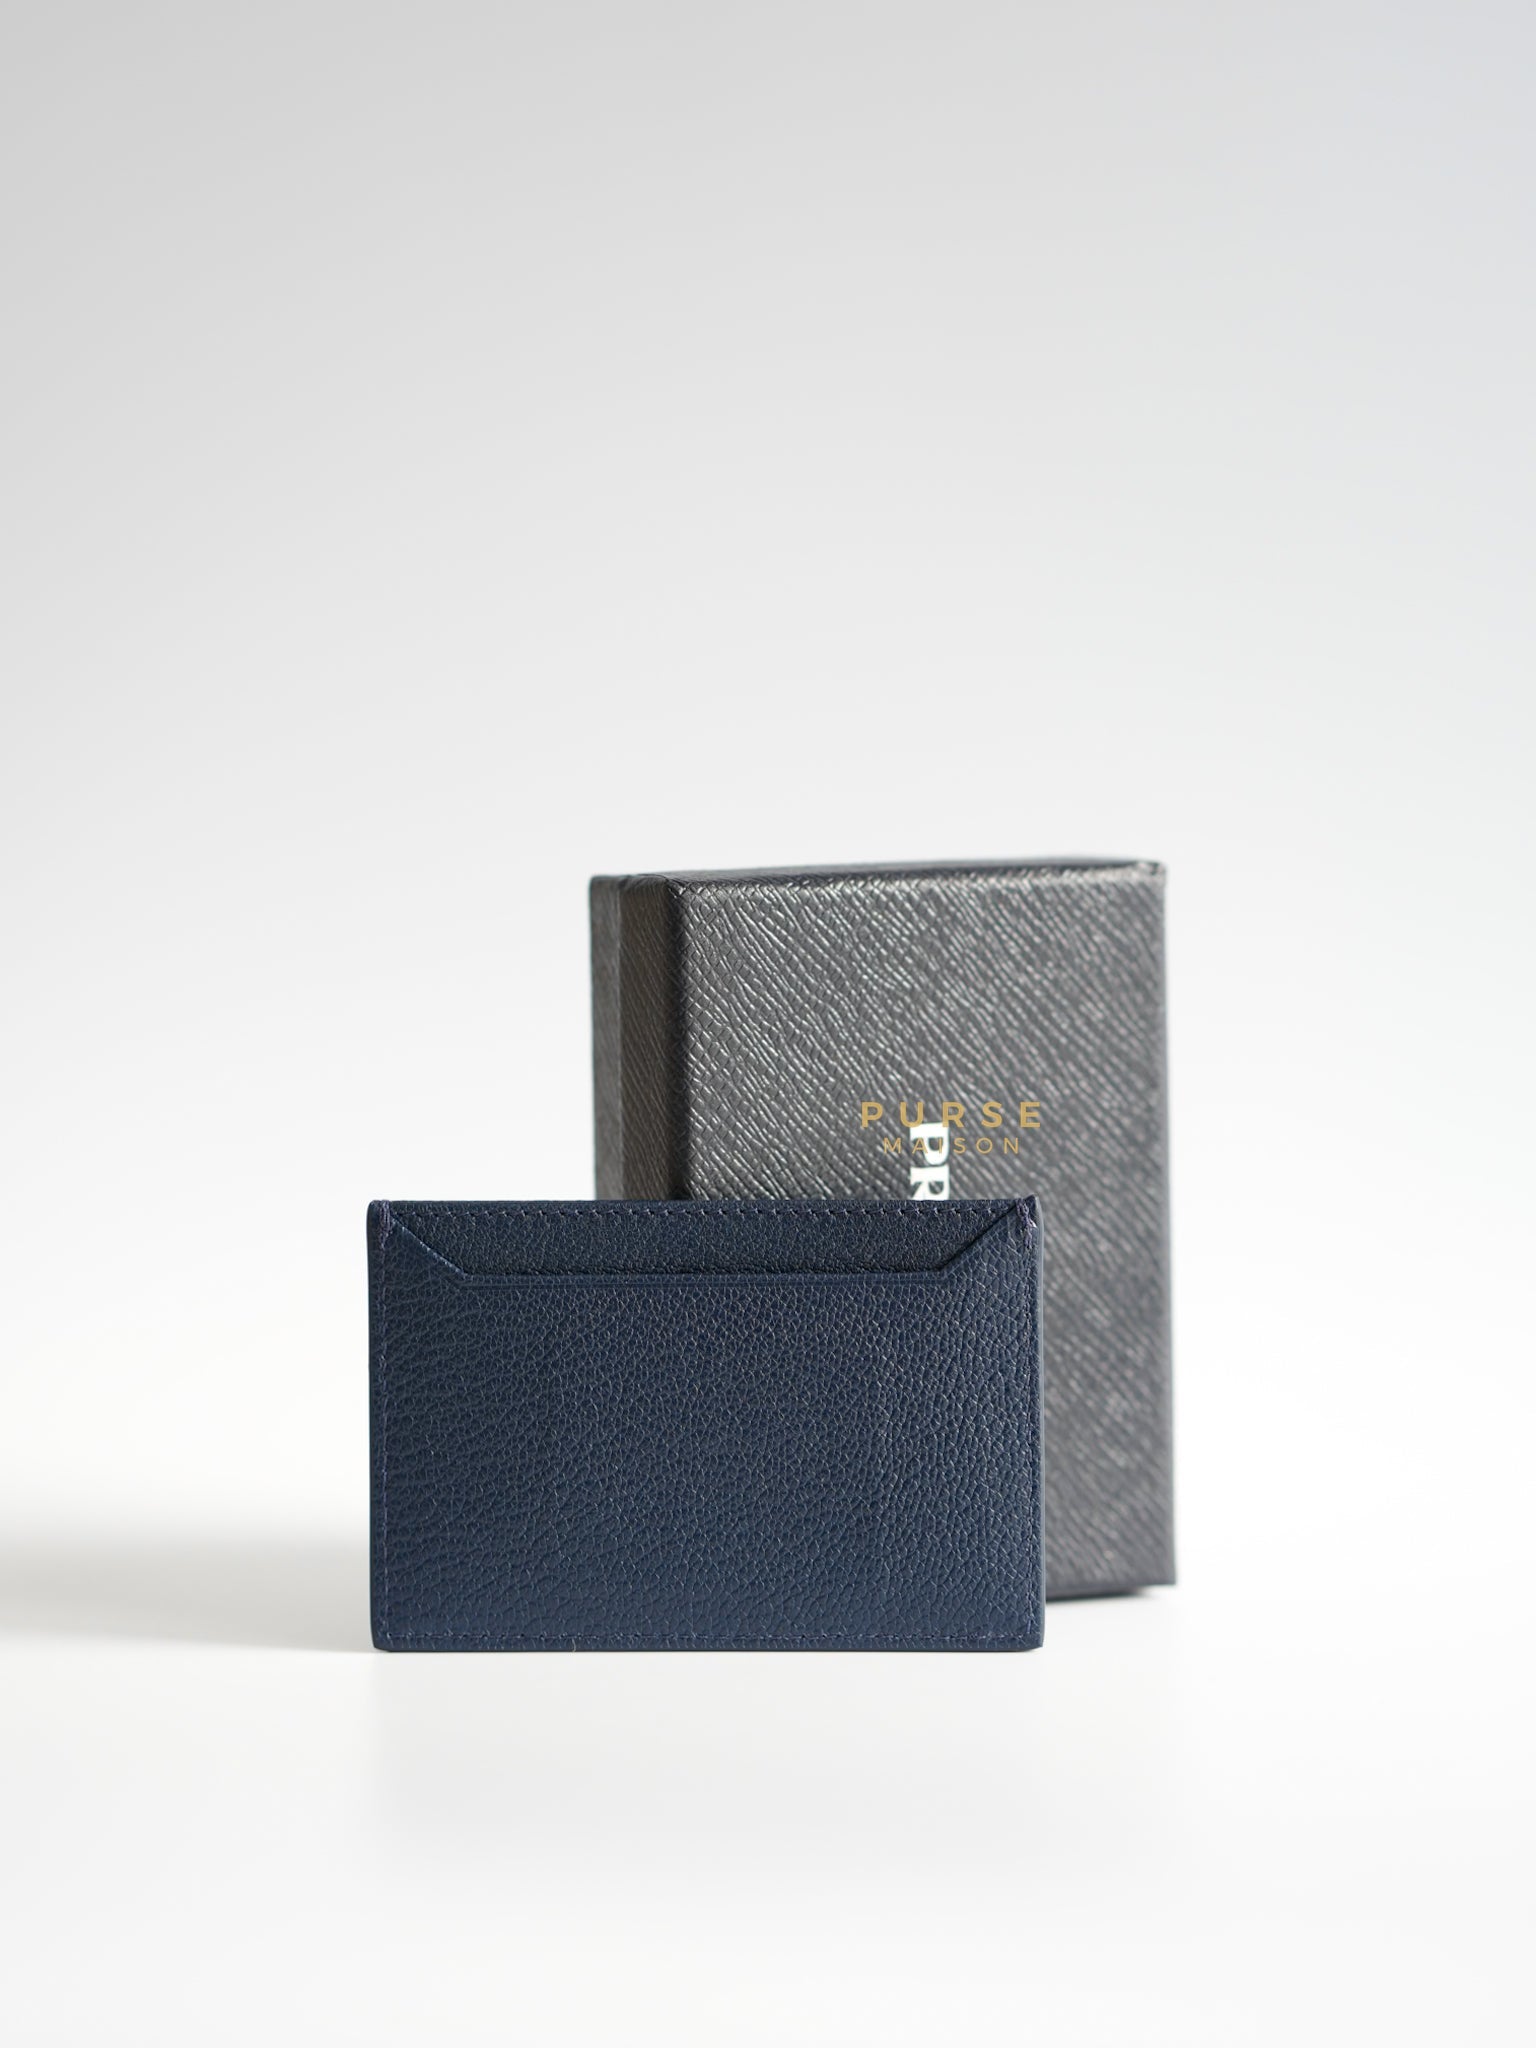 1MC208 Portacarte Card Holder (Navy Blue) | Purse Maison Luxury Bags Shop